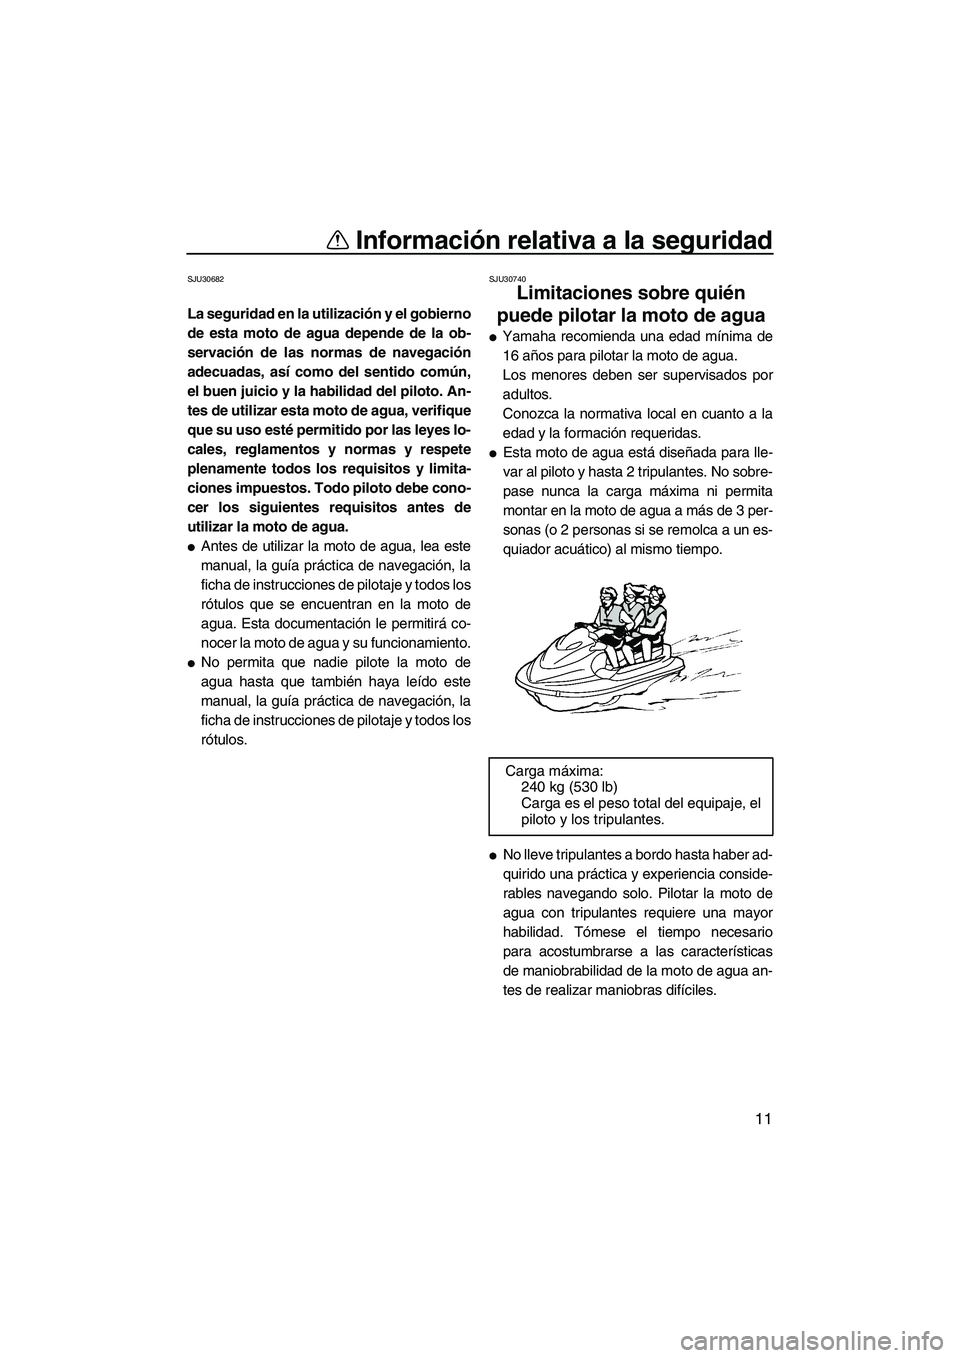 YAMAHA FX HO 2013  Manuale de Empleo (in Spanish) Información relativa a la seguridad
11
SJU30682
La seguridad en la utilización y el gobierno
de esta moto de agua depende de la ob-
servación de las normas de navegación
adecuadas, así como del s